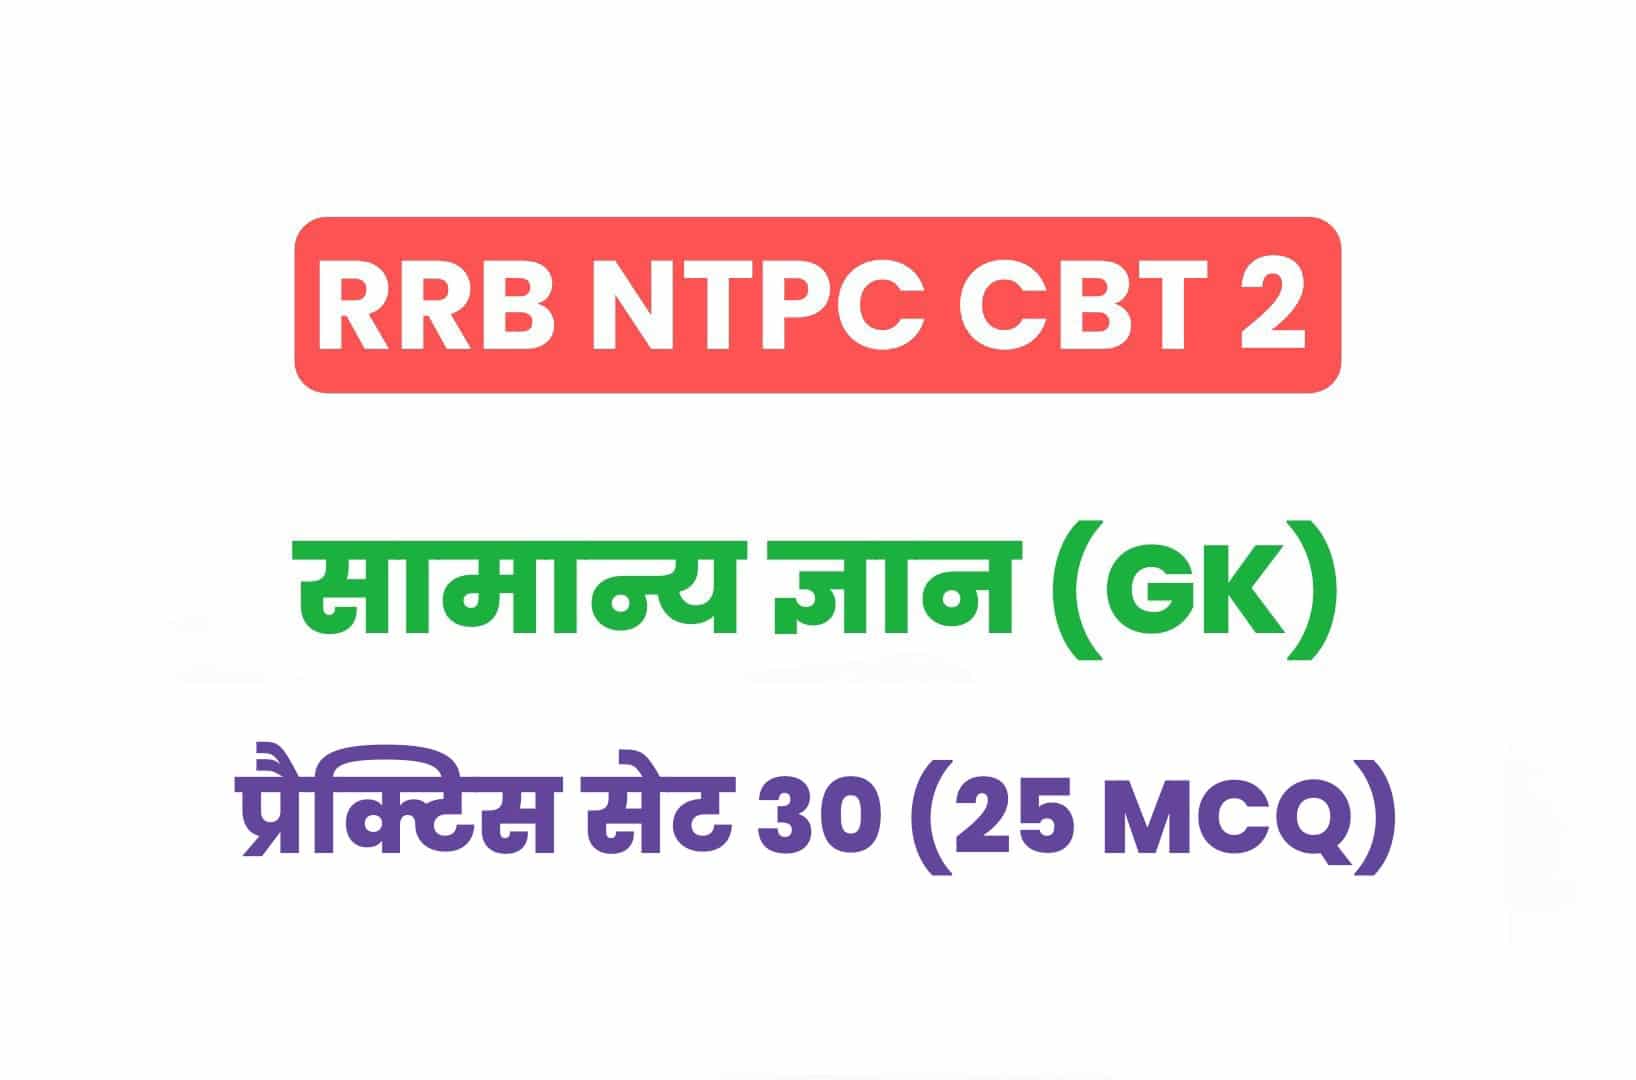 RRB NTPC CBT 2 GK प्रैक्टिस सेट 30: परीक्षा में पूछे गये सामान्य ज्ञान के महत्वपूर्ण 25 MCQ जरूर करें अध्ययन